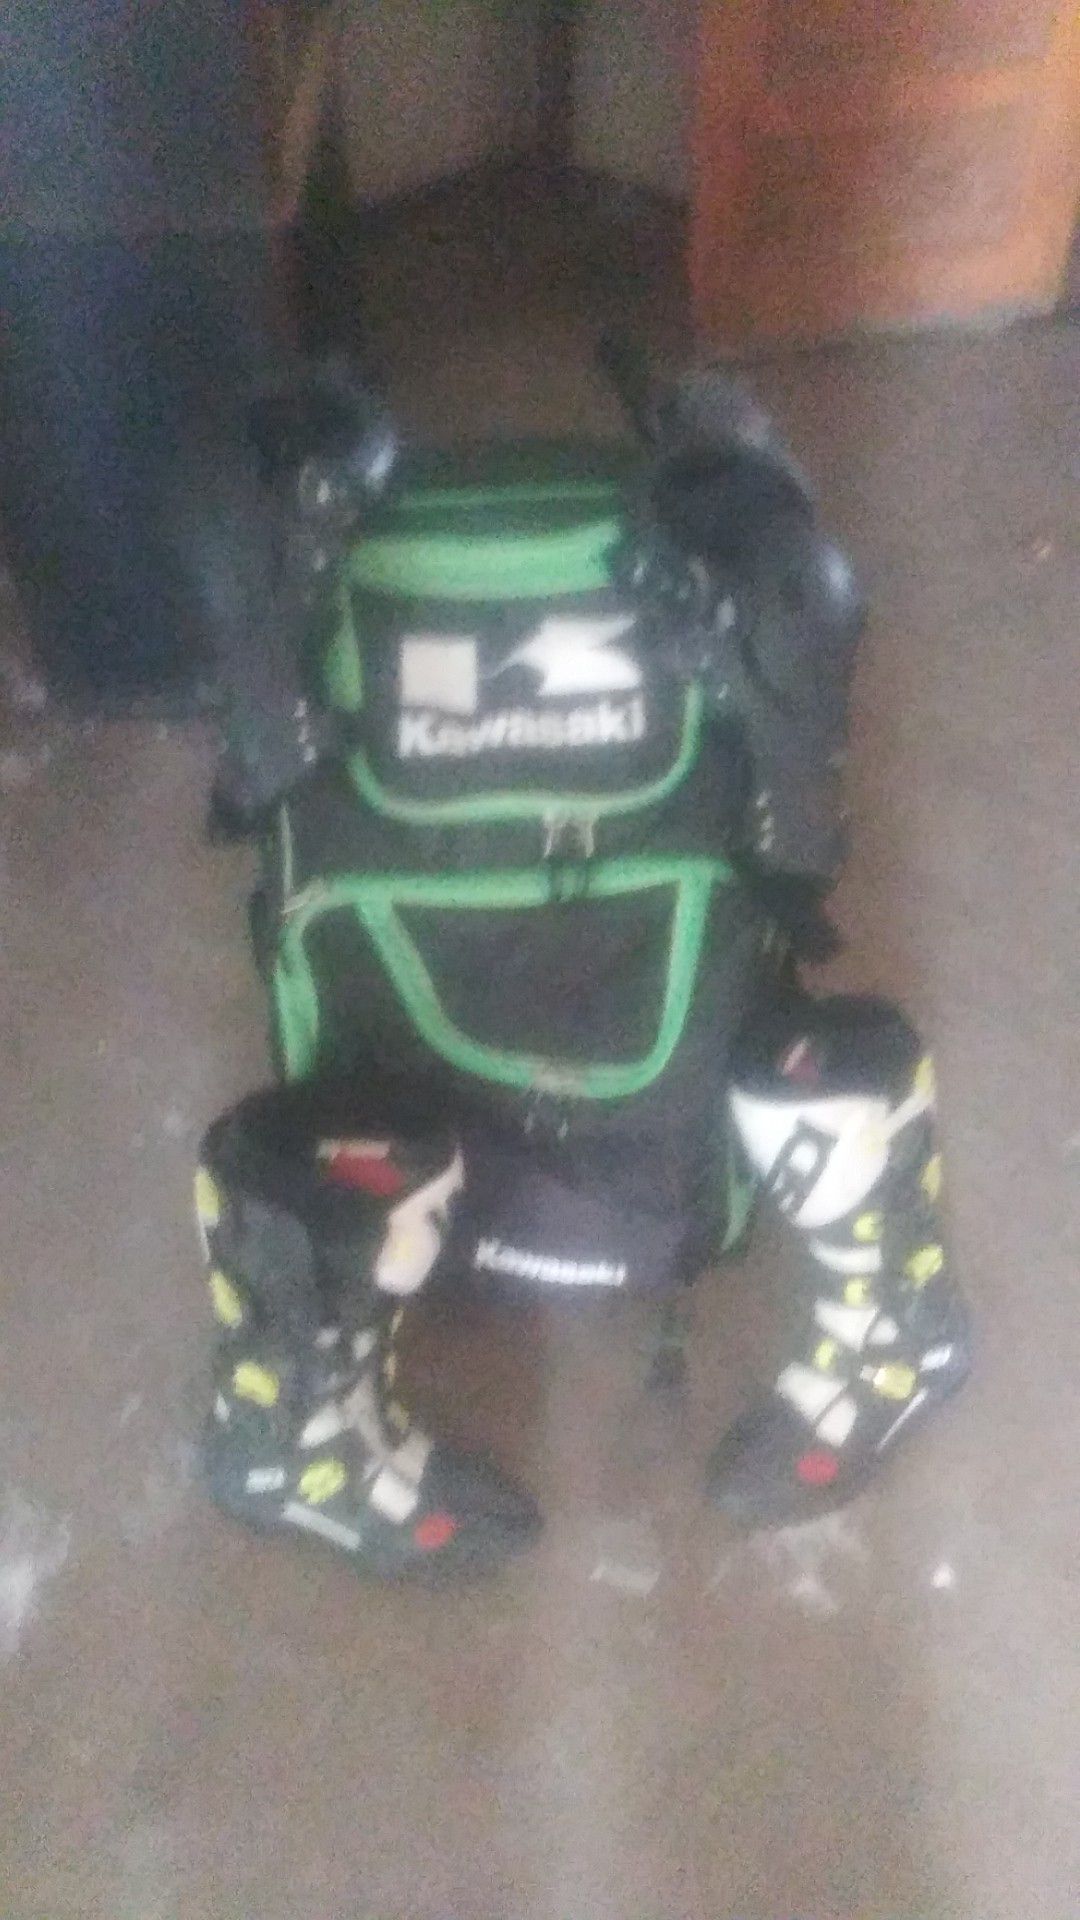 Kawasaki knee pads and riding boots